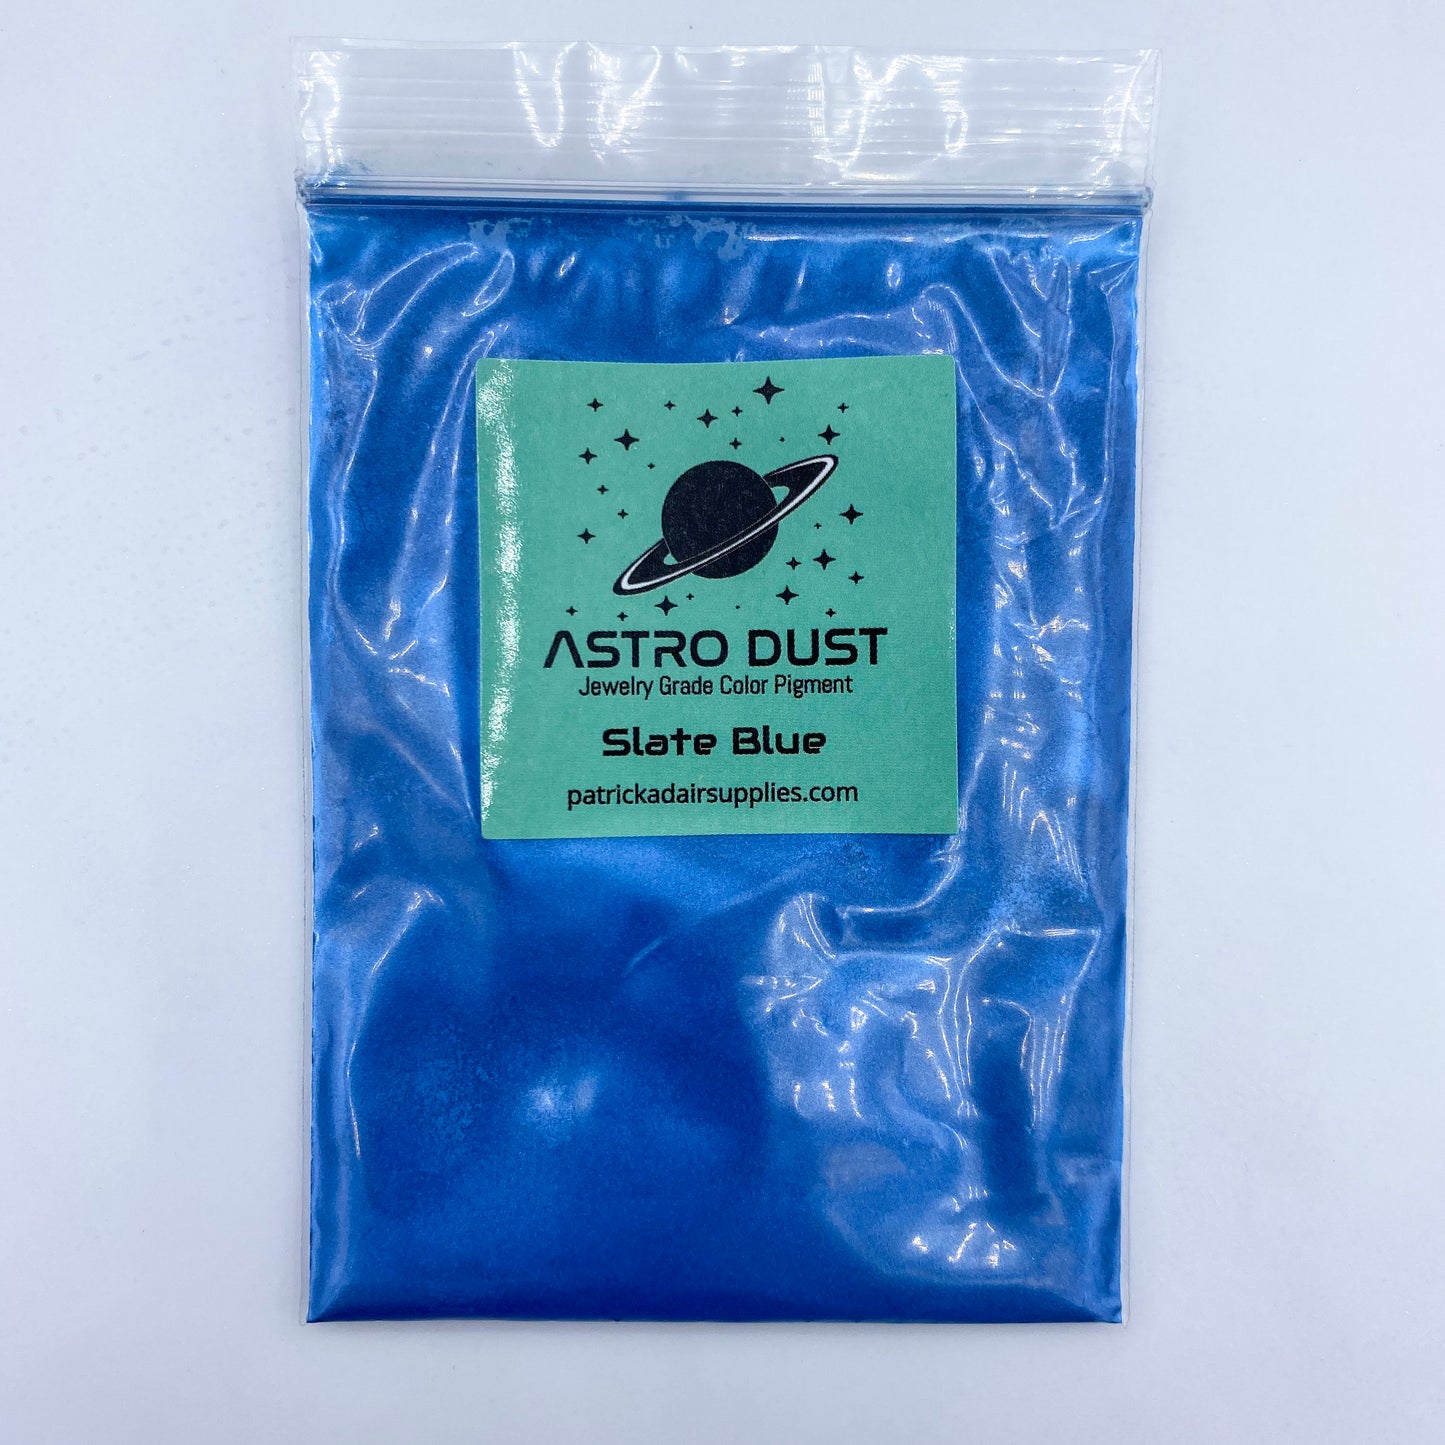 Astro Dust Slate Blue Color Pigment - Patrick Adair Supplies